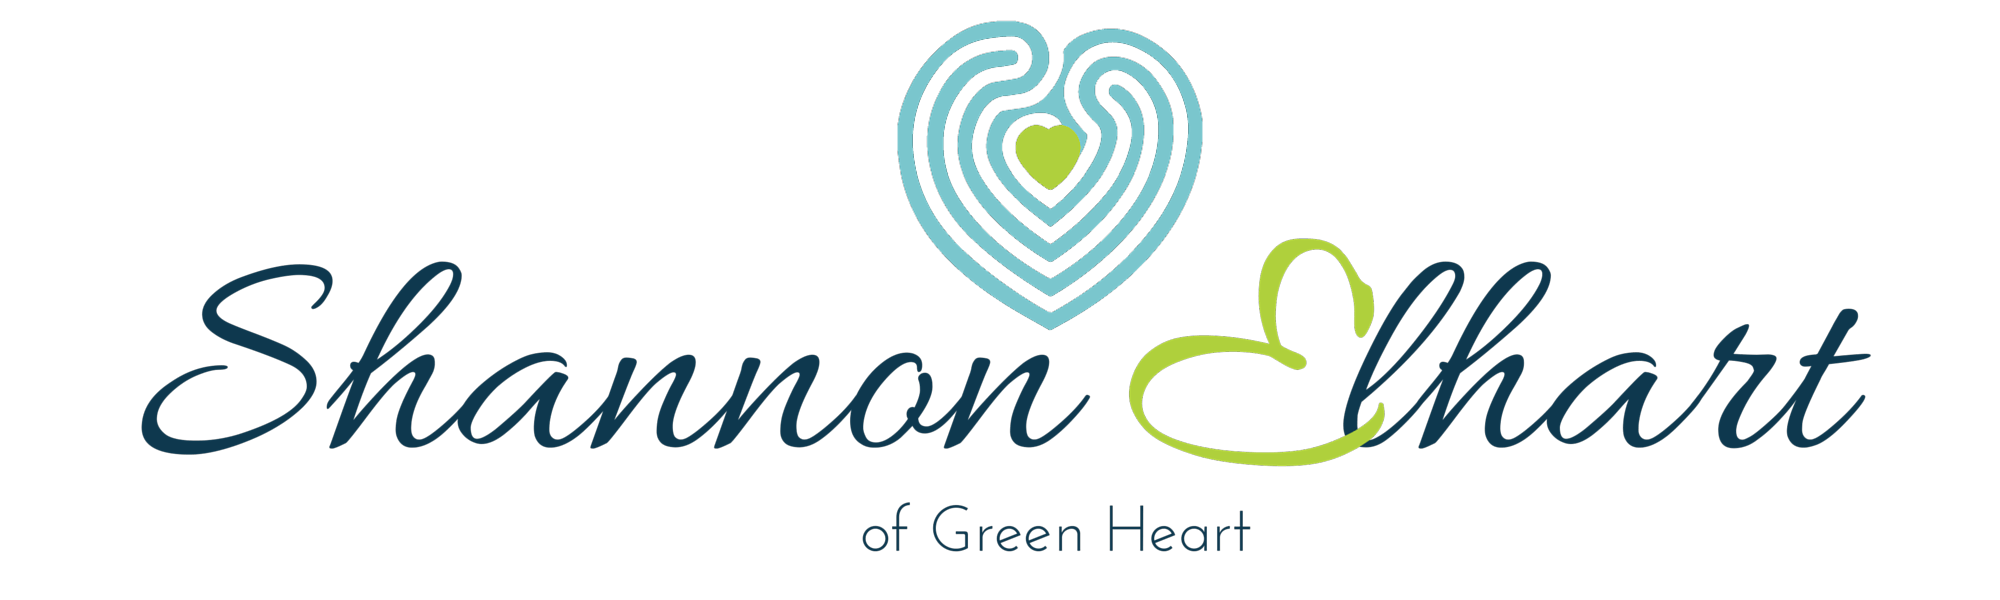 Blue and Green Heart Logo - About Green Heart - Shannon Elhart